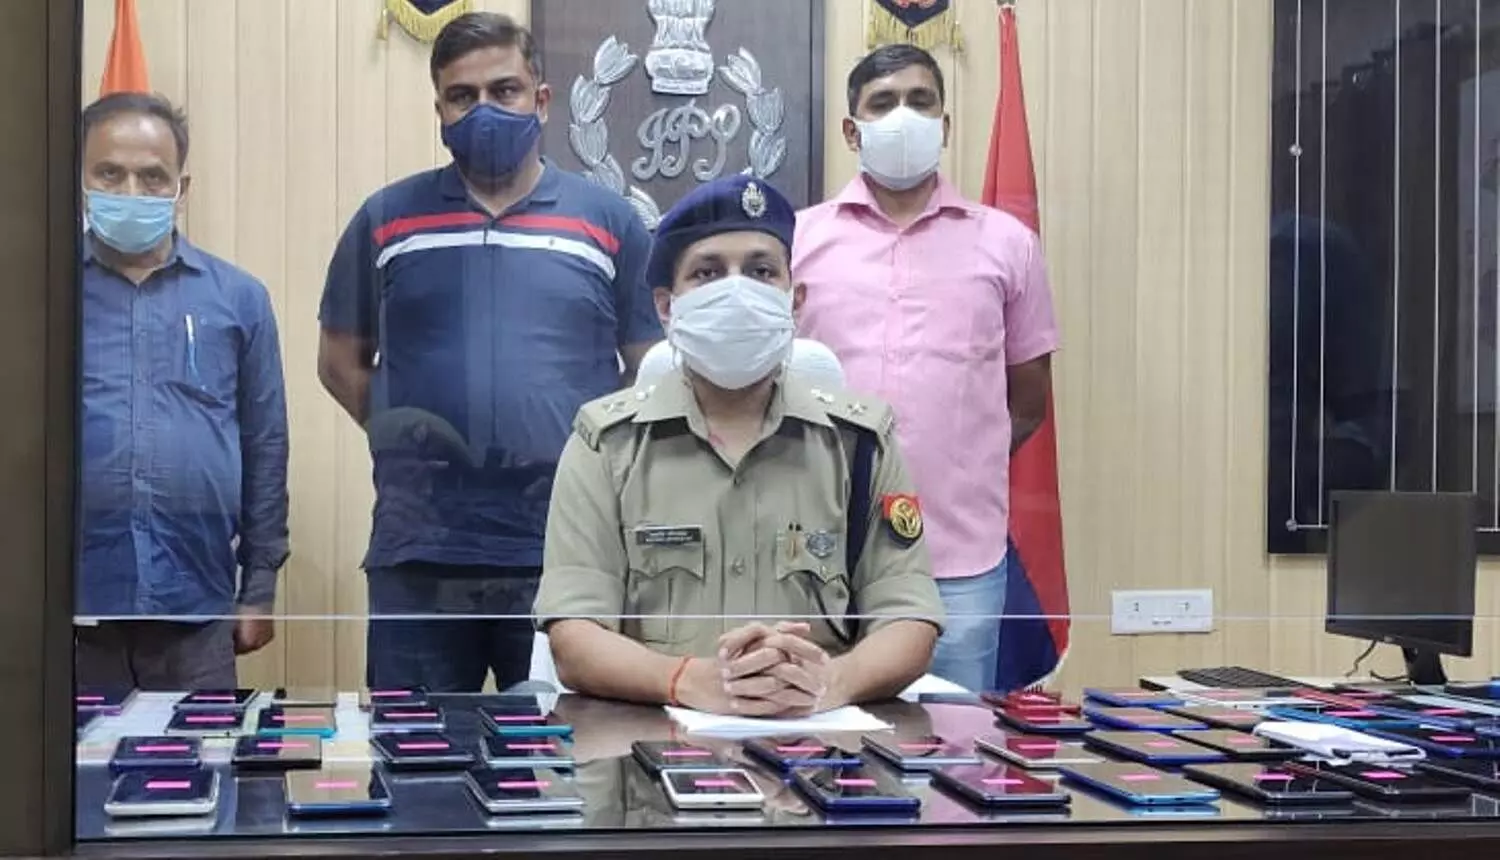 सराहनीय: पुलिस ने 81 गुमशुदा मोबाइल बरामद कर उनके मालिकों को लौटाया